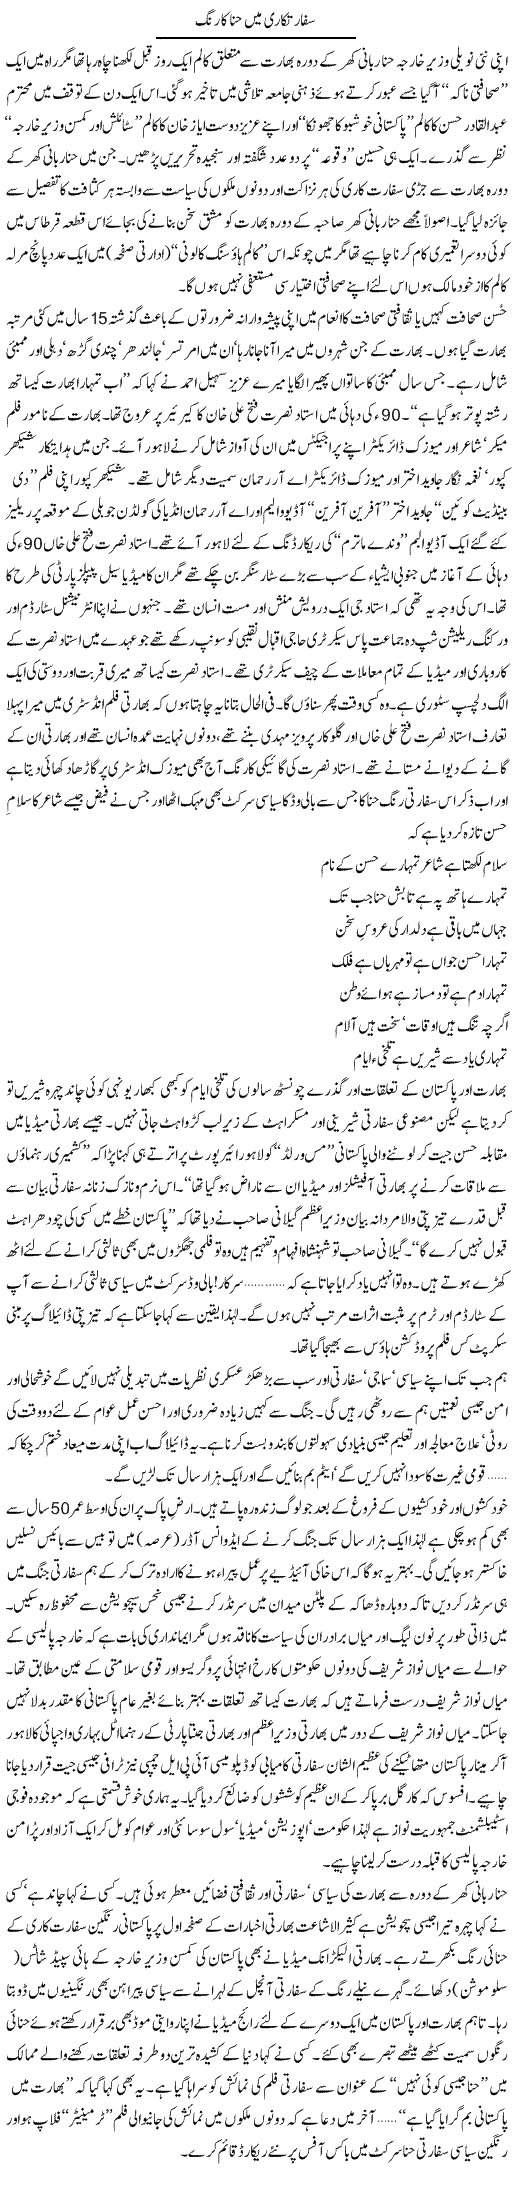 Hina Rabbani Express Column Tahir Sarwar 1 August 2011